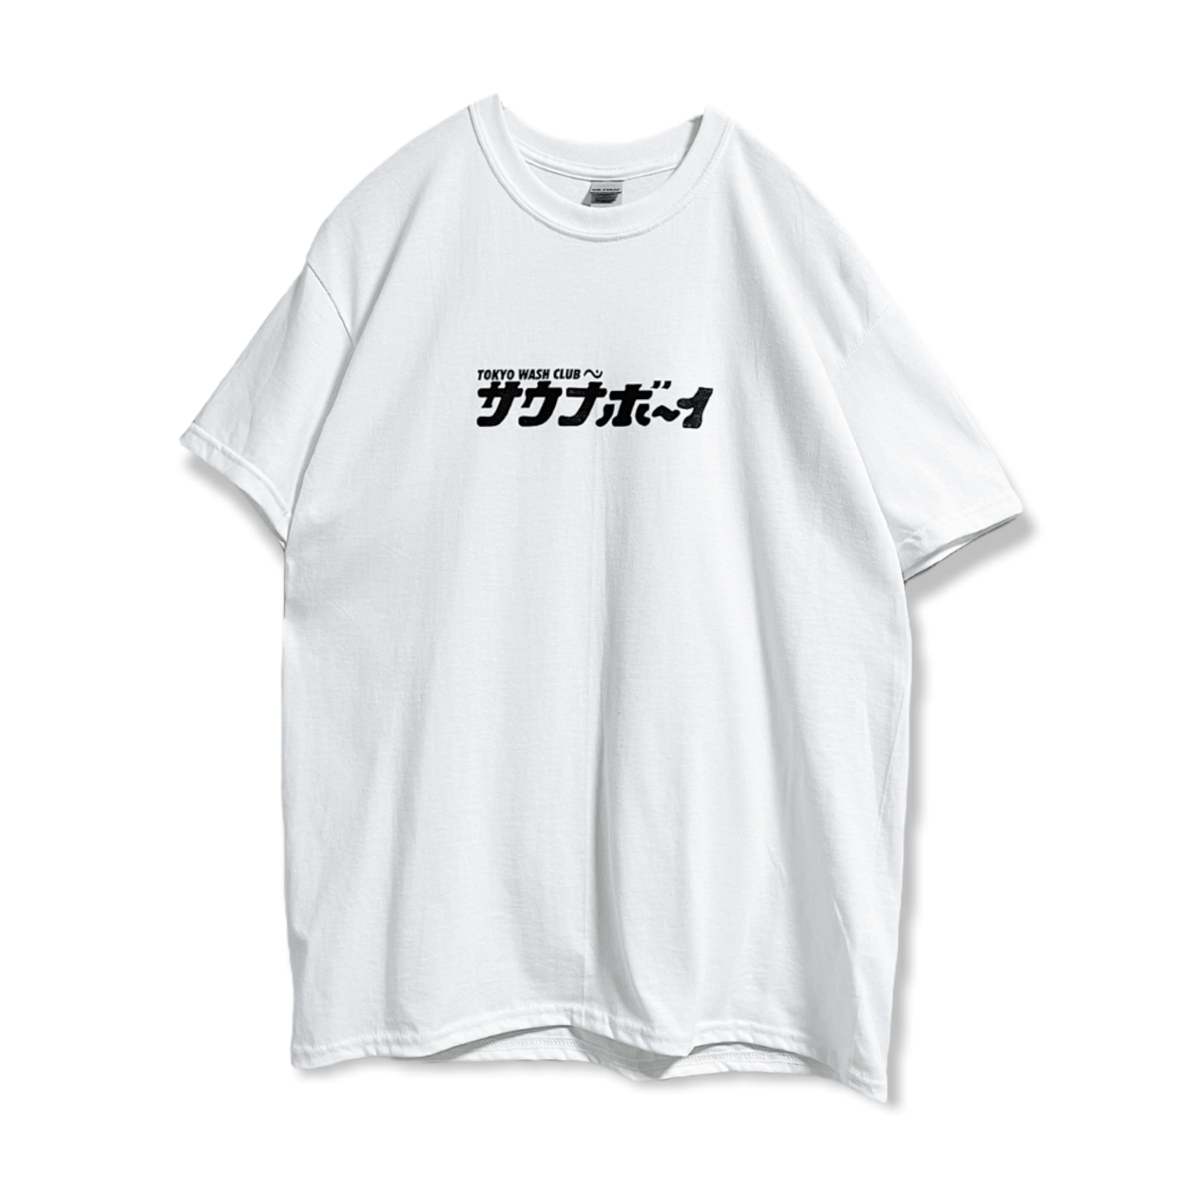 tokyo wash club Tシャツ Mサイズ - Tシャツ